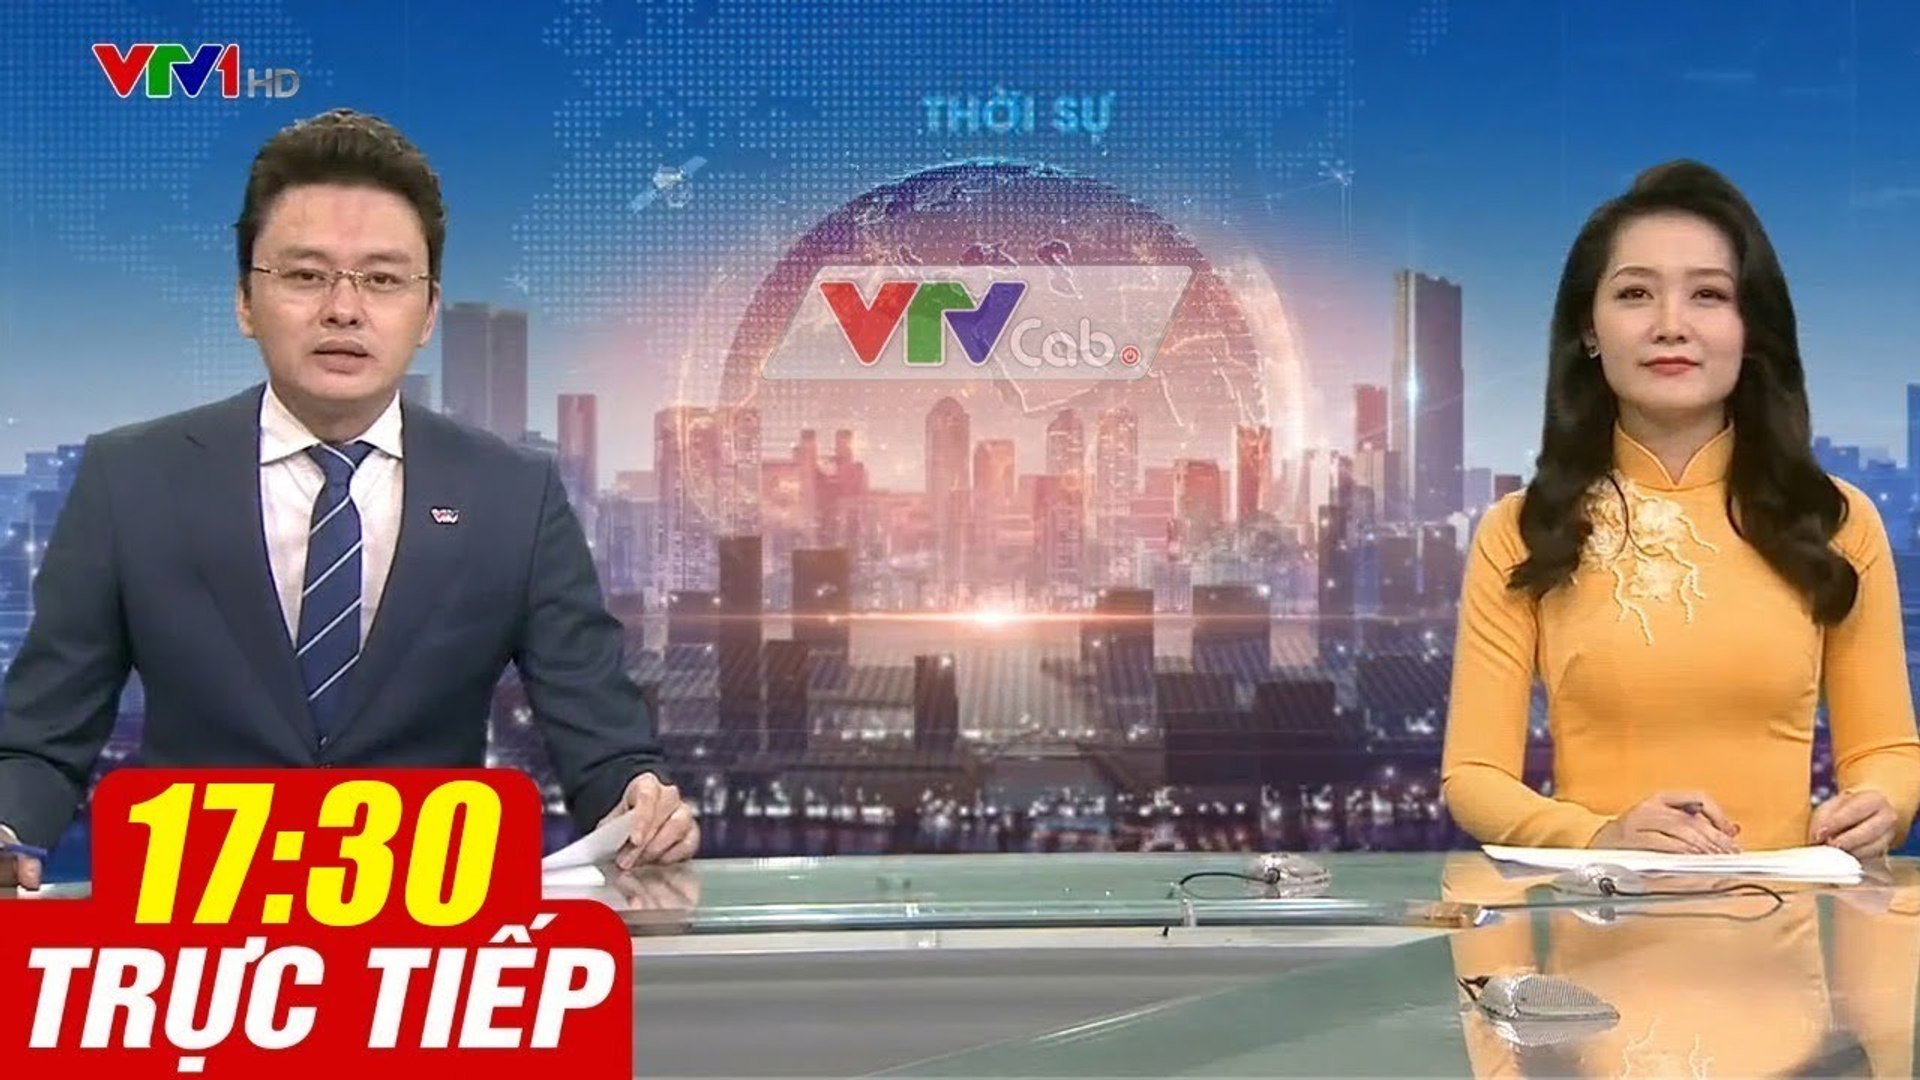 Trực Tiếp VIỆT NAM HÔM NAY 17h30 ngày 15.10.2020  Tin tức thời sự VTV1 mới nhất hôm nay